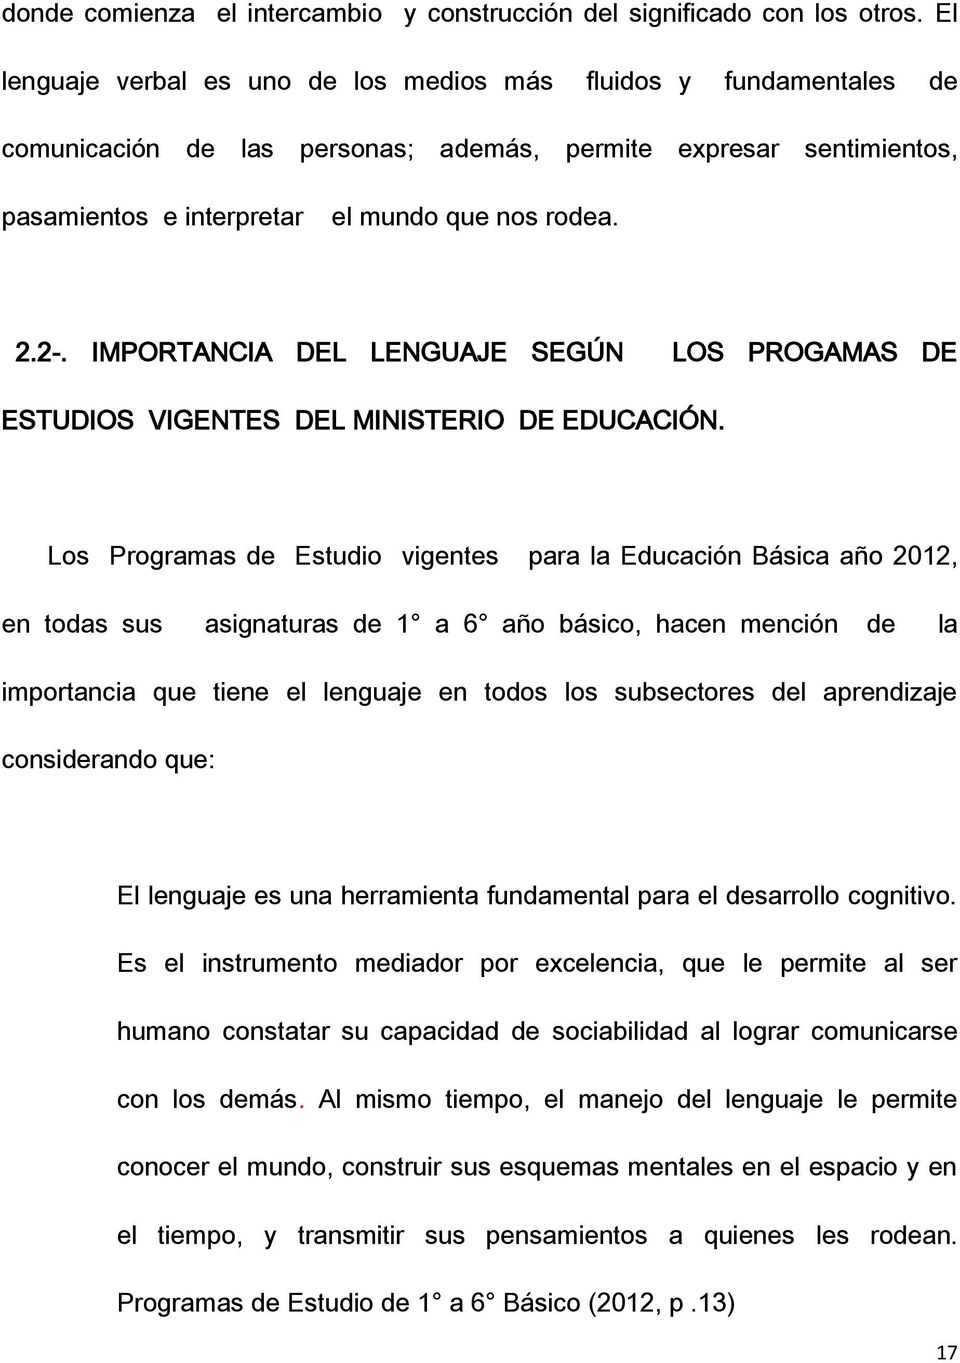 IMPORTANCIA DEL LENGUAJE SEGÚN LOS PROGAMAS DE ESTUDIOS VIGENTES DEL MINISTERIO DE EDUCACIÓN.